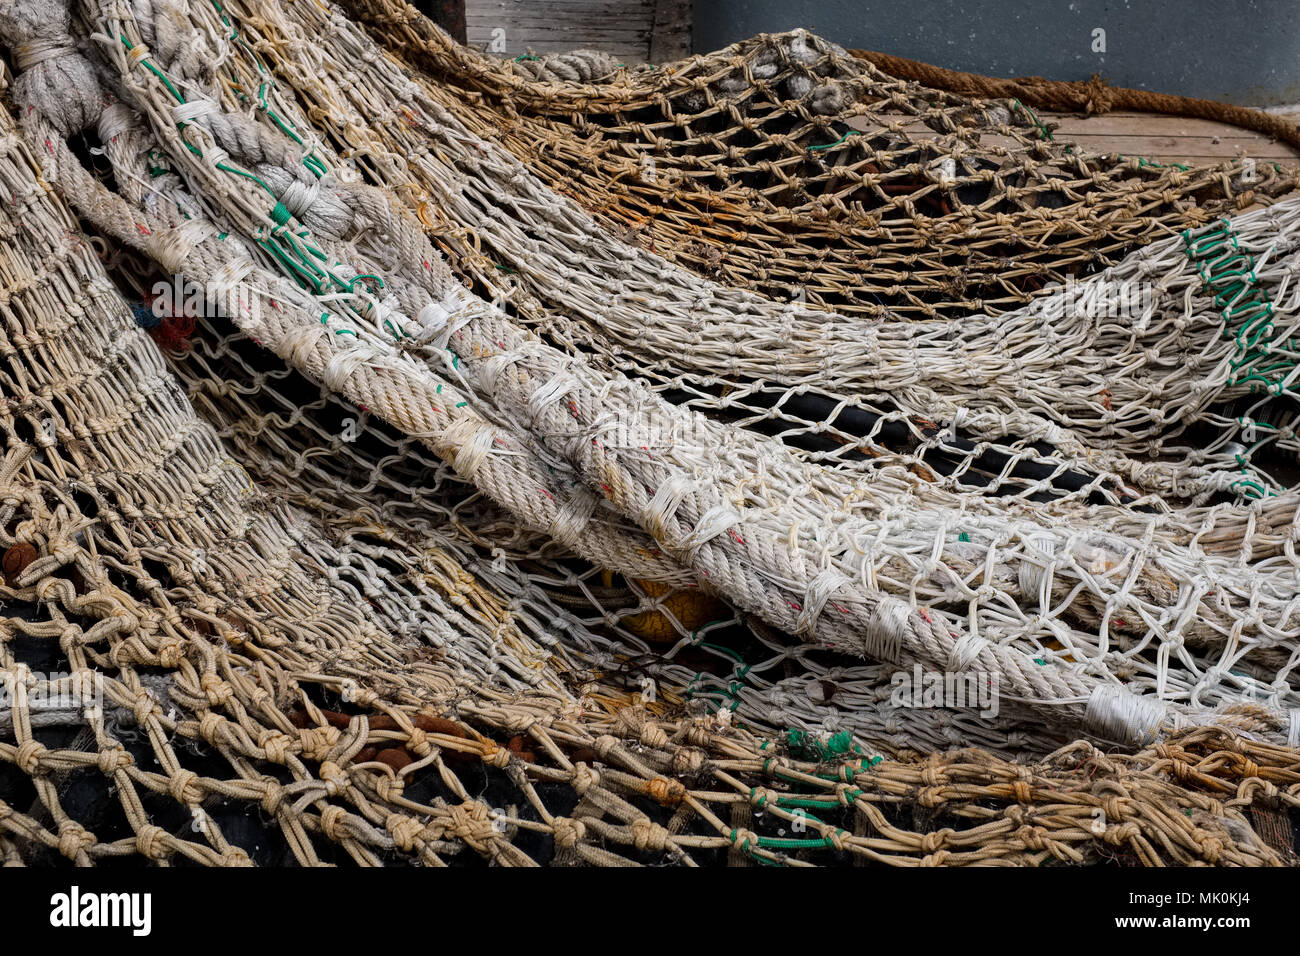 Fishing net close-up Stock Photo